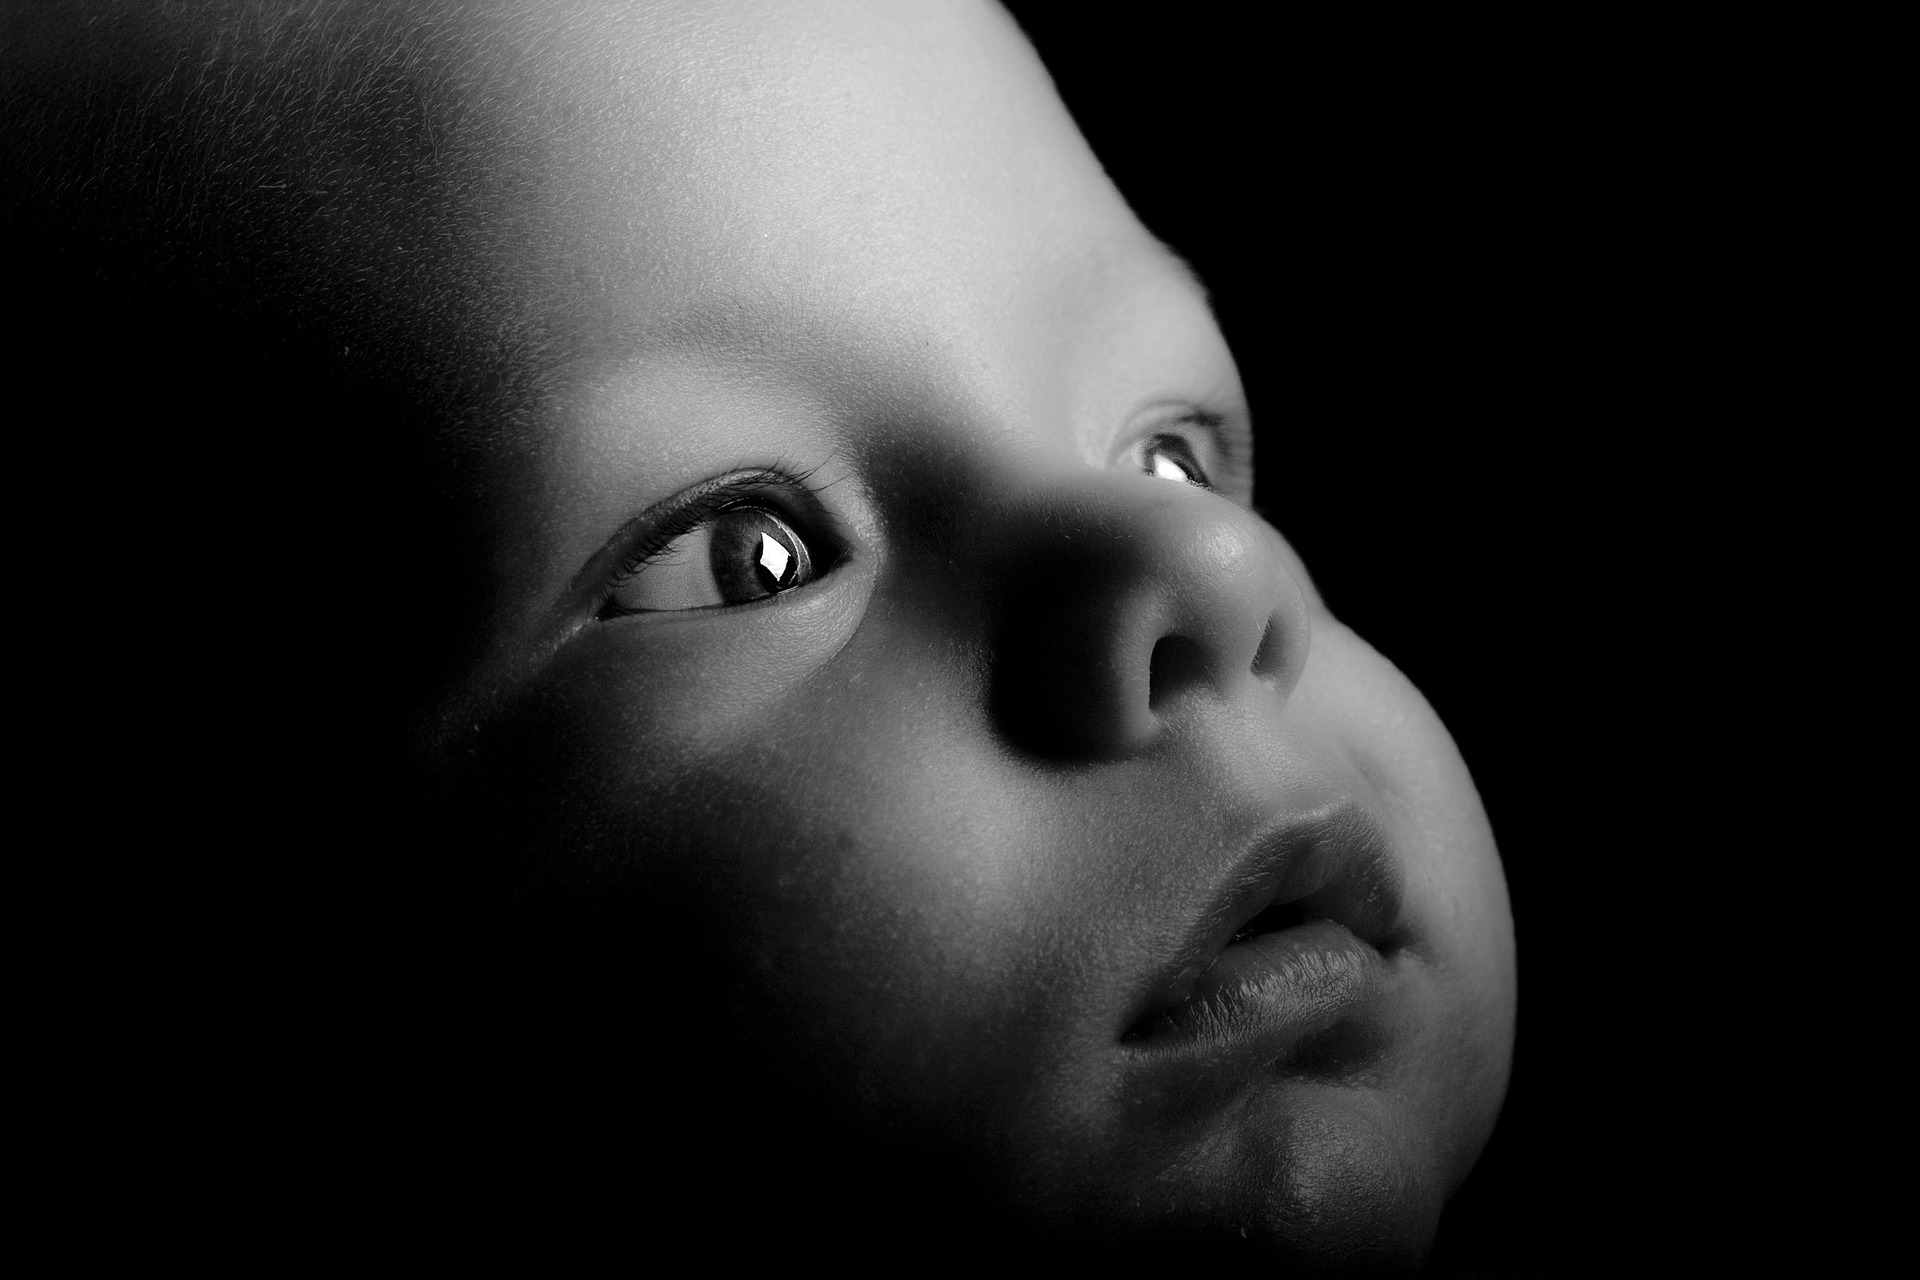 Mirada de nadó per il·lustrar l'estimulació visual